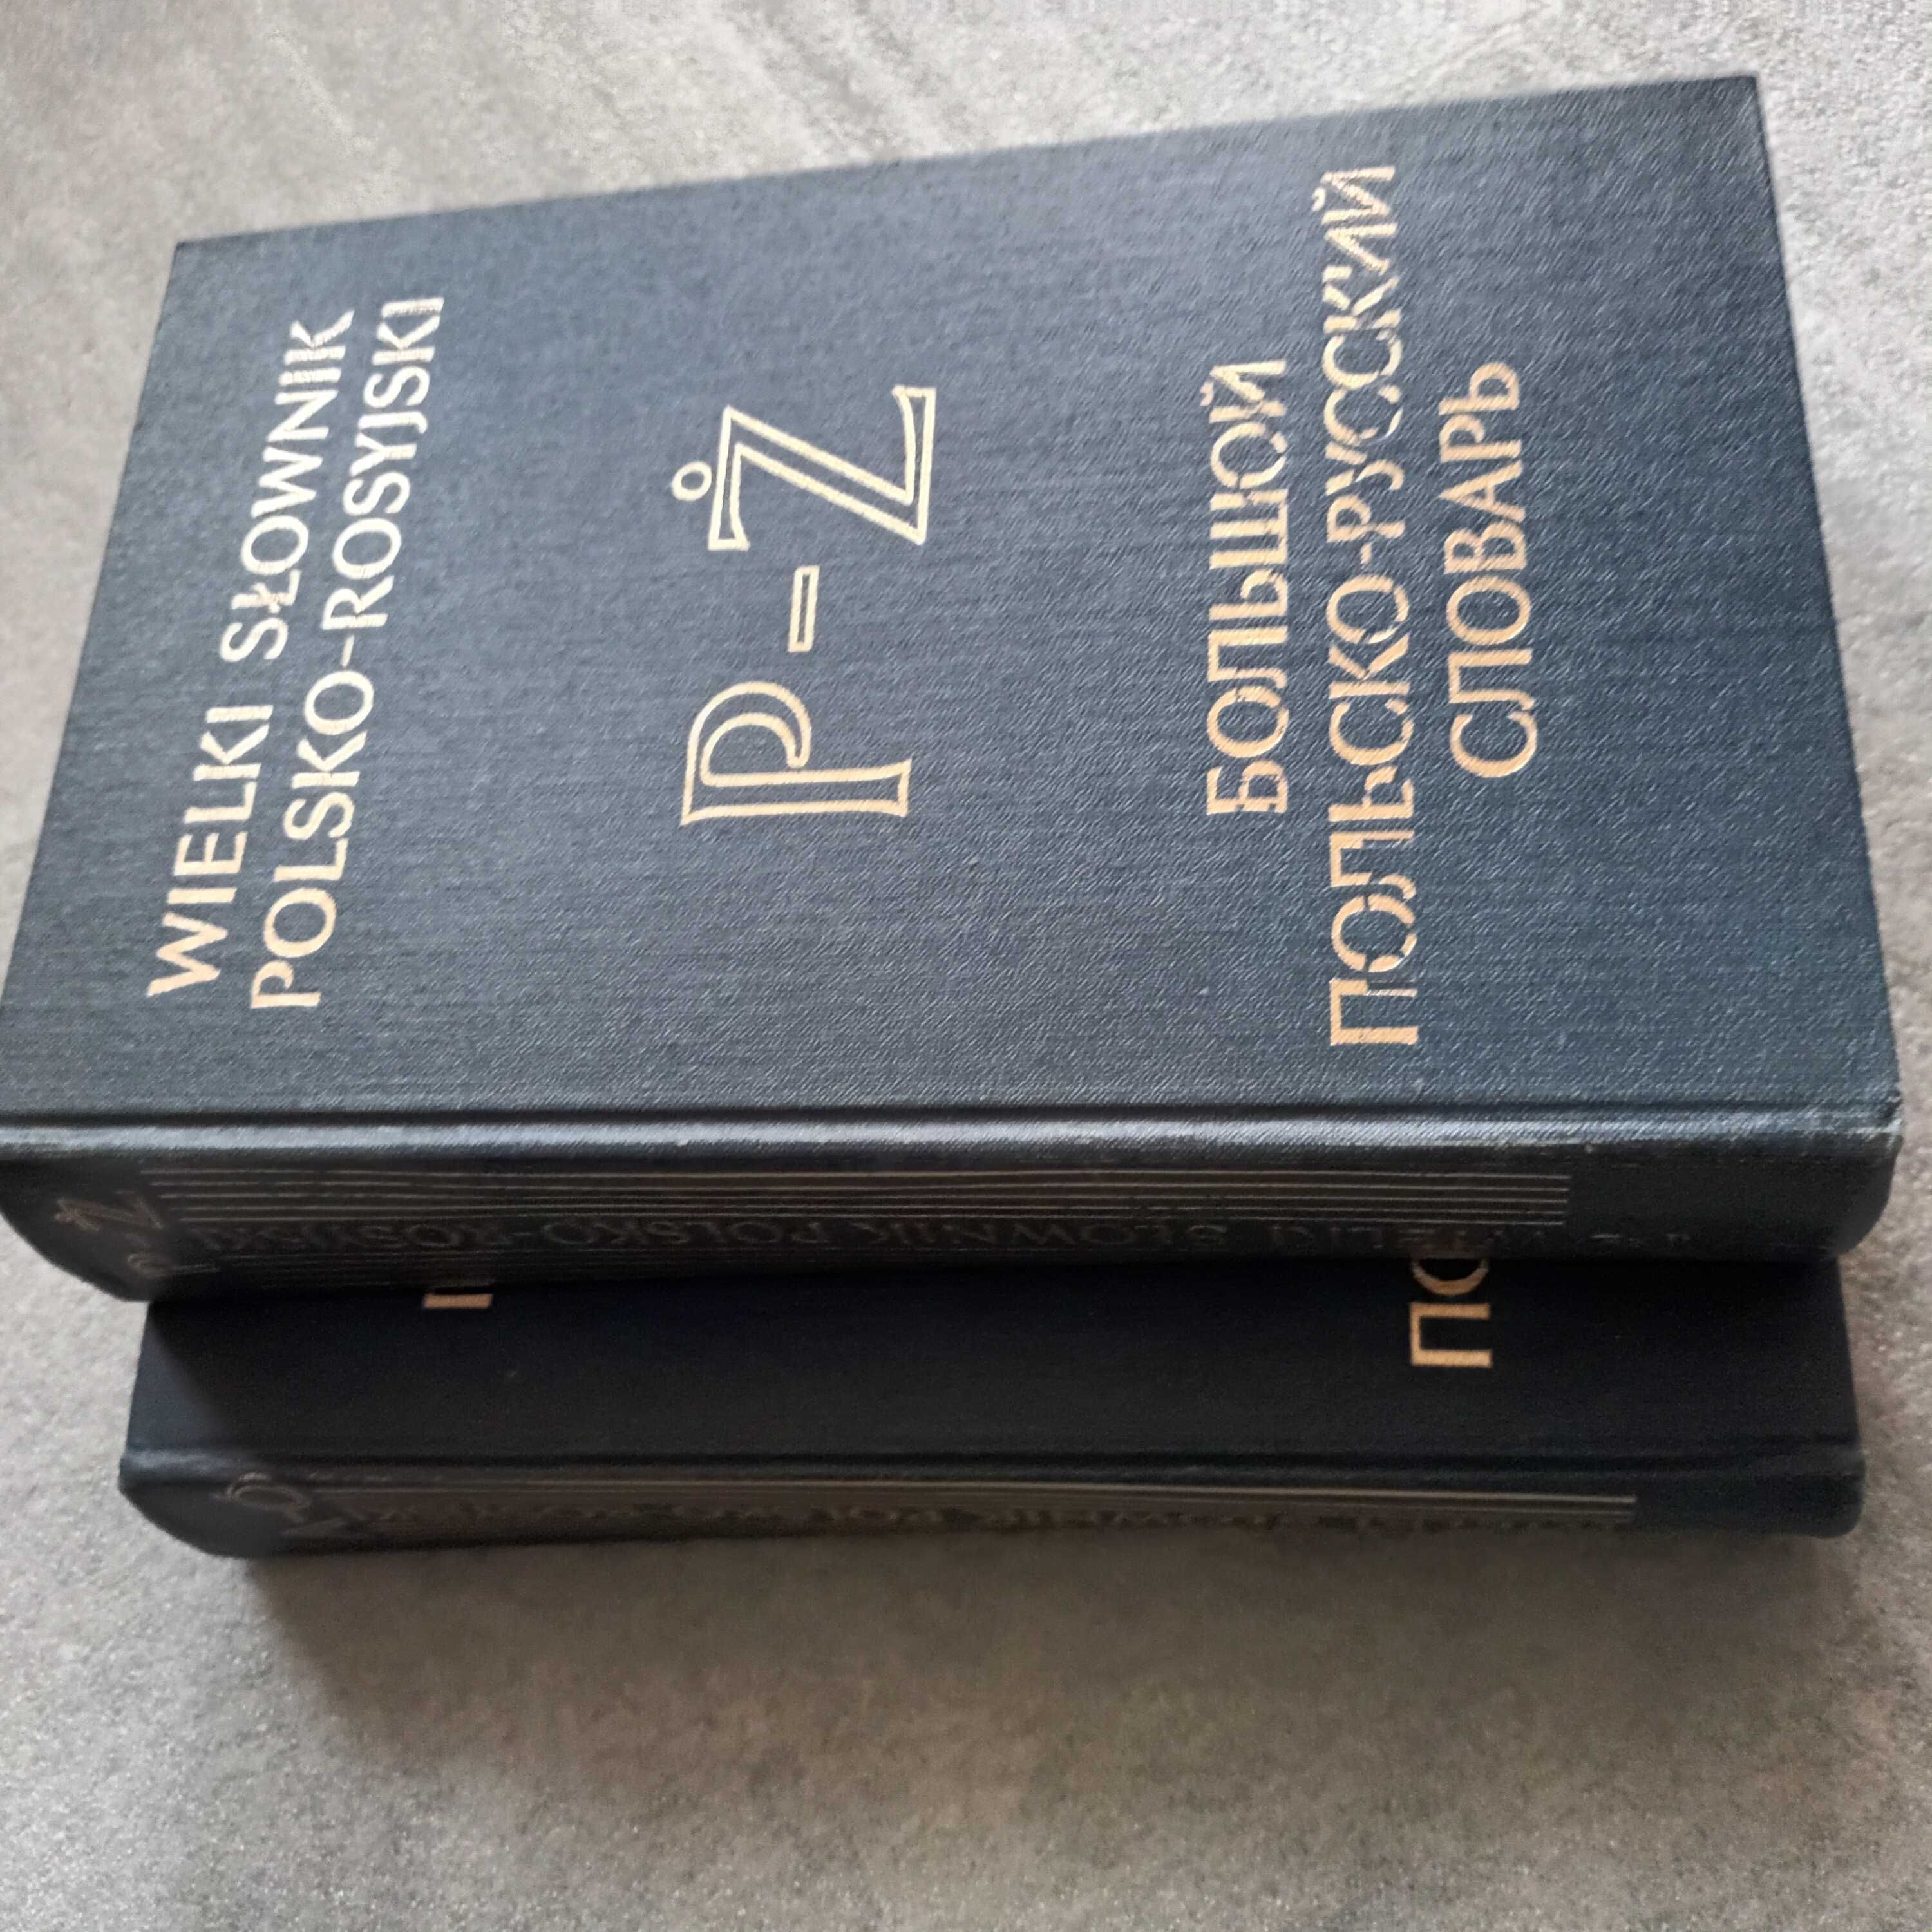 Wielki słownik polsko rosyjski Tom I + II